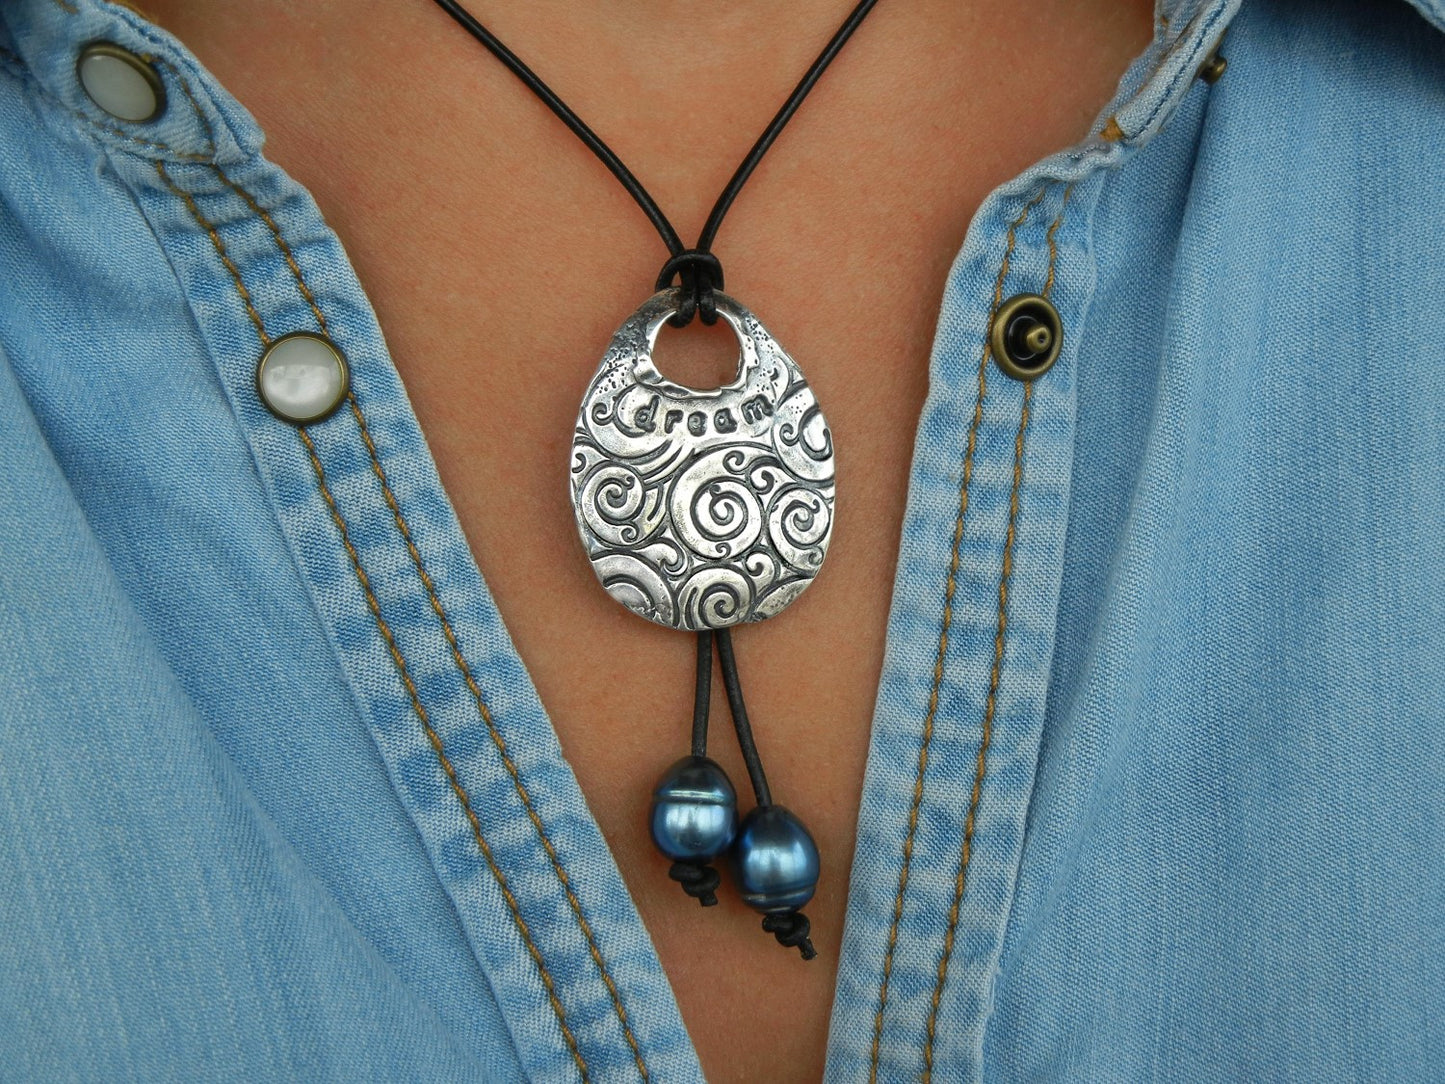 Dream Necklace Inspirational Jewelry - HappyGoLicky Jewelry